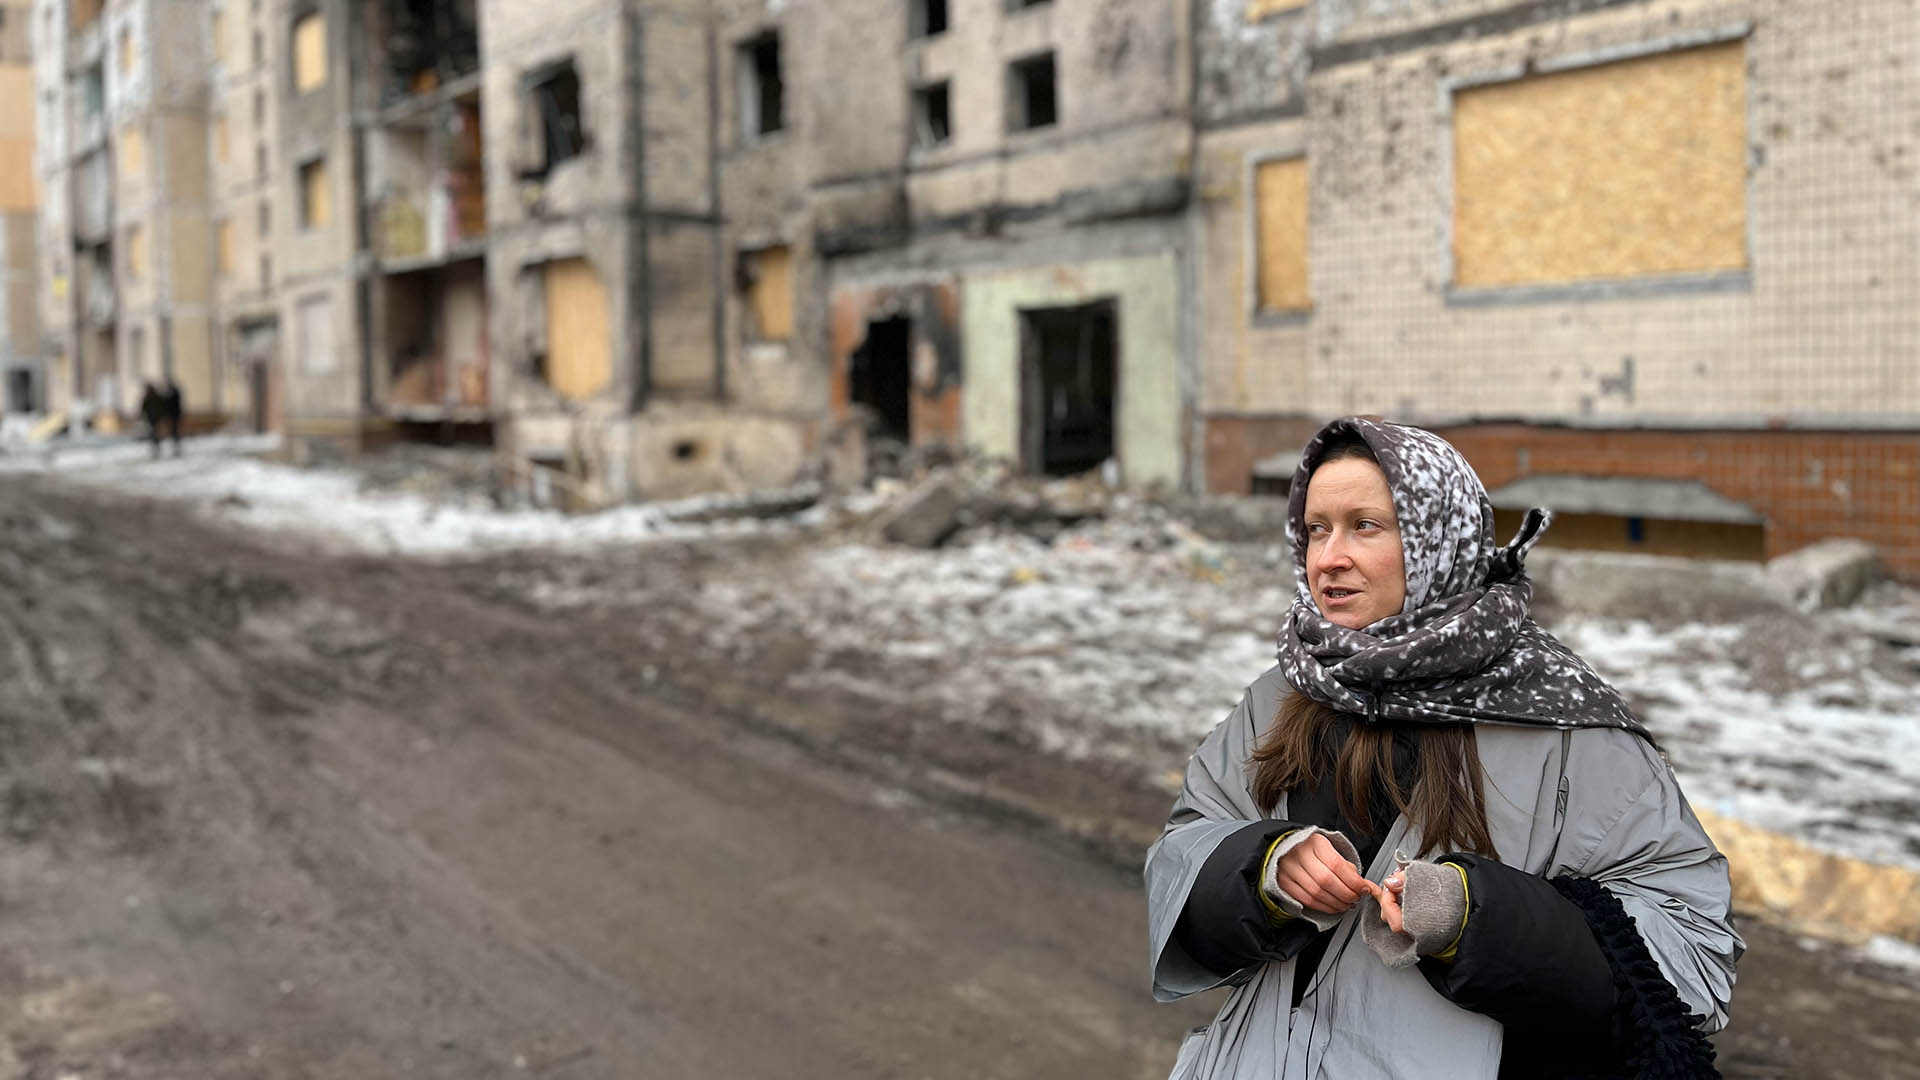 Dana vor der ausgebrannte Wohnung in Kiew (Quelle: rbb/Natalija Yefimkina)